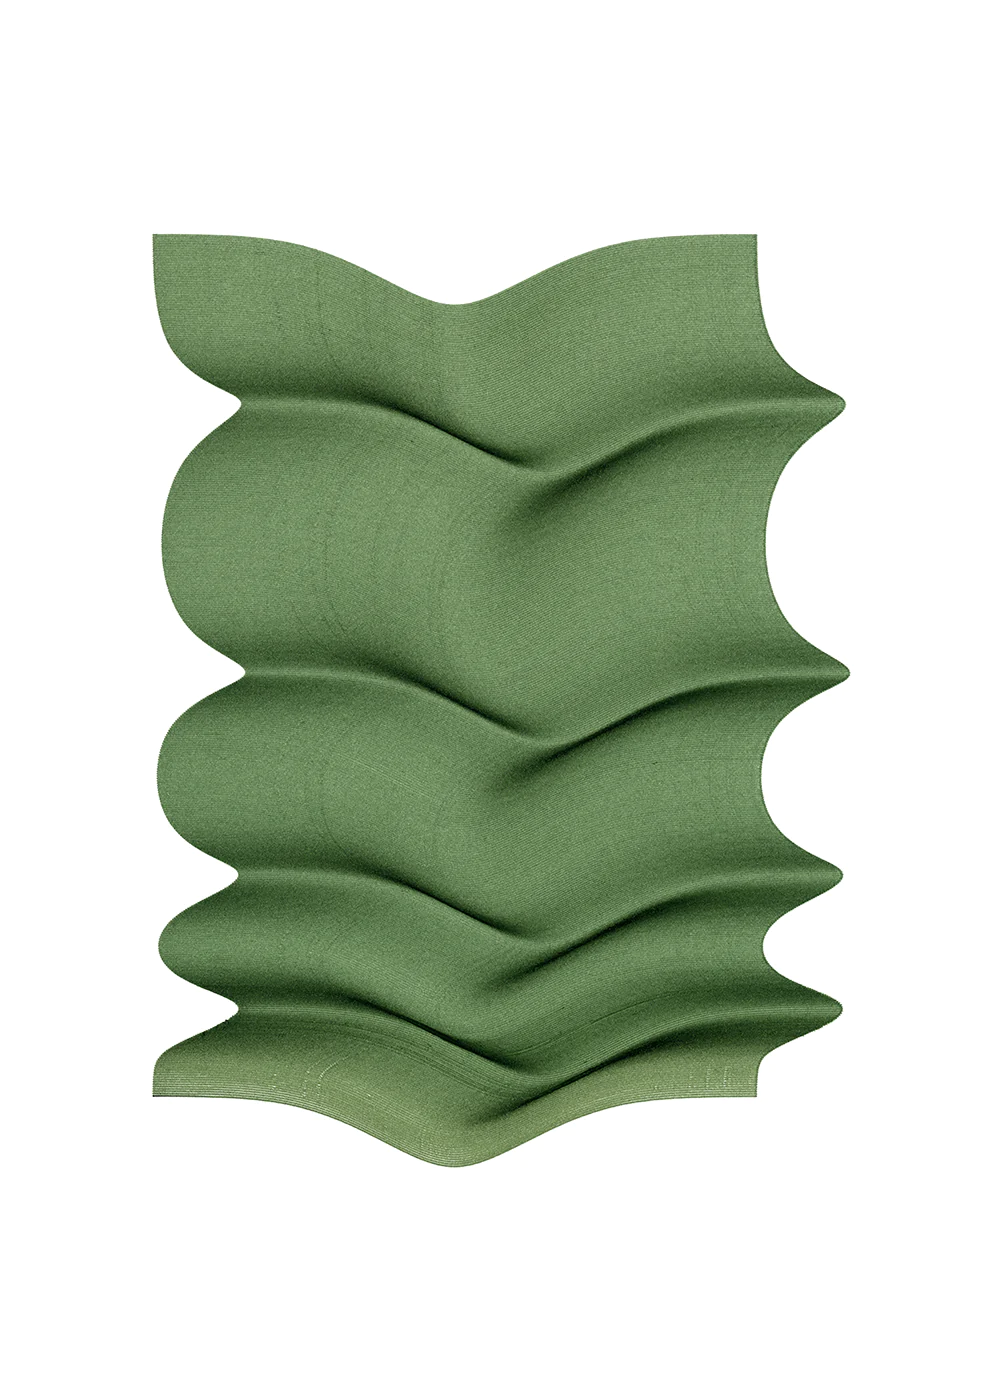 Green Fold  in Grün / Weiss präsentiert im Onlineshop von KAQTU Design AG. Bild ist von Paper Collective